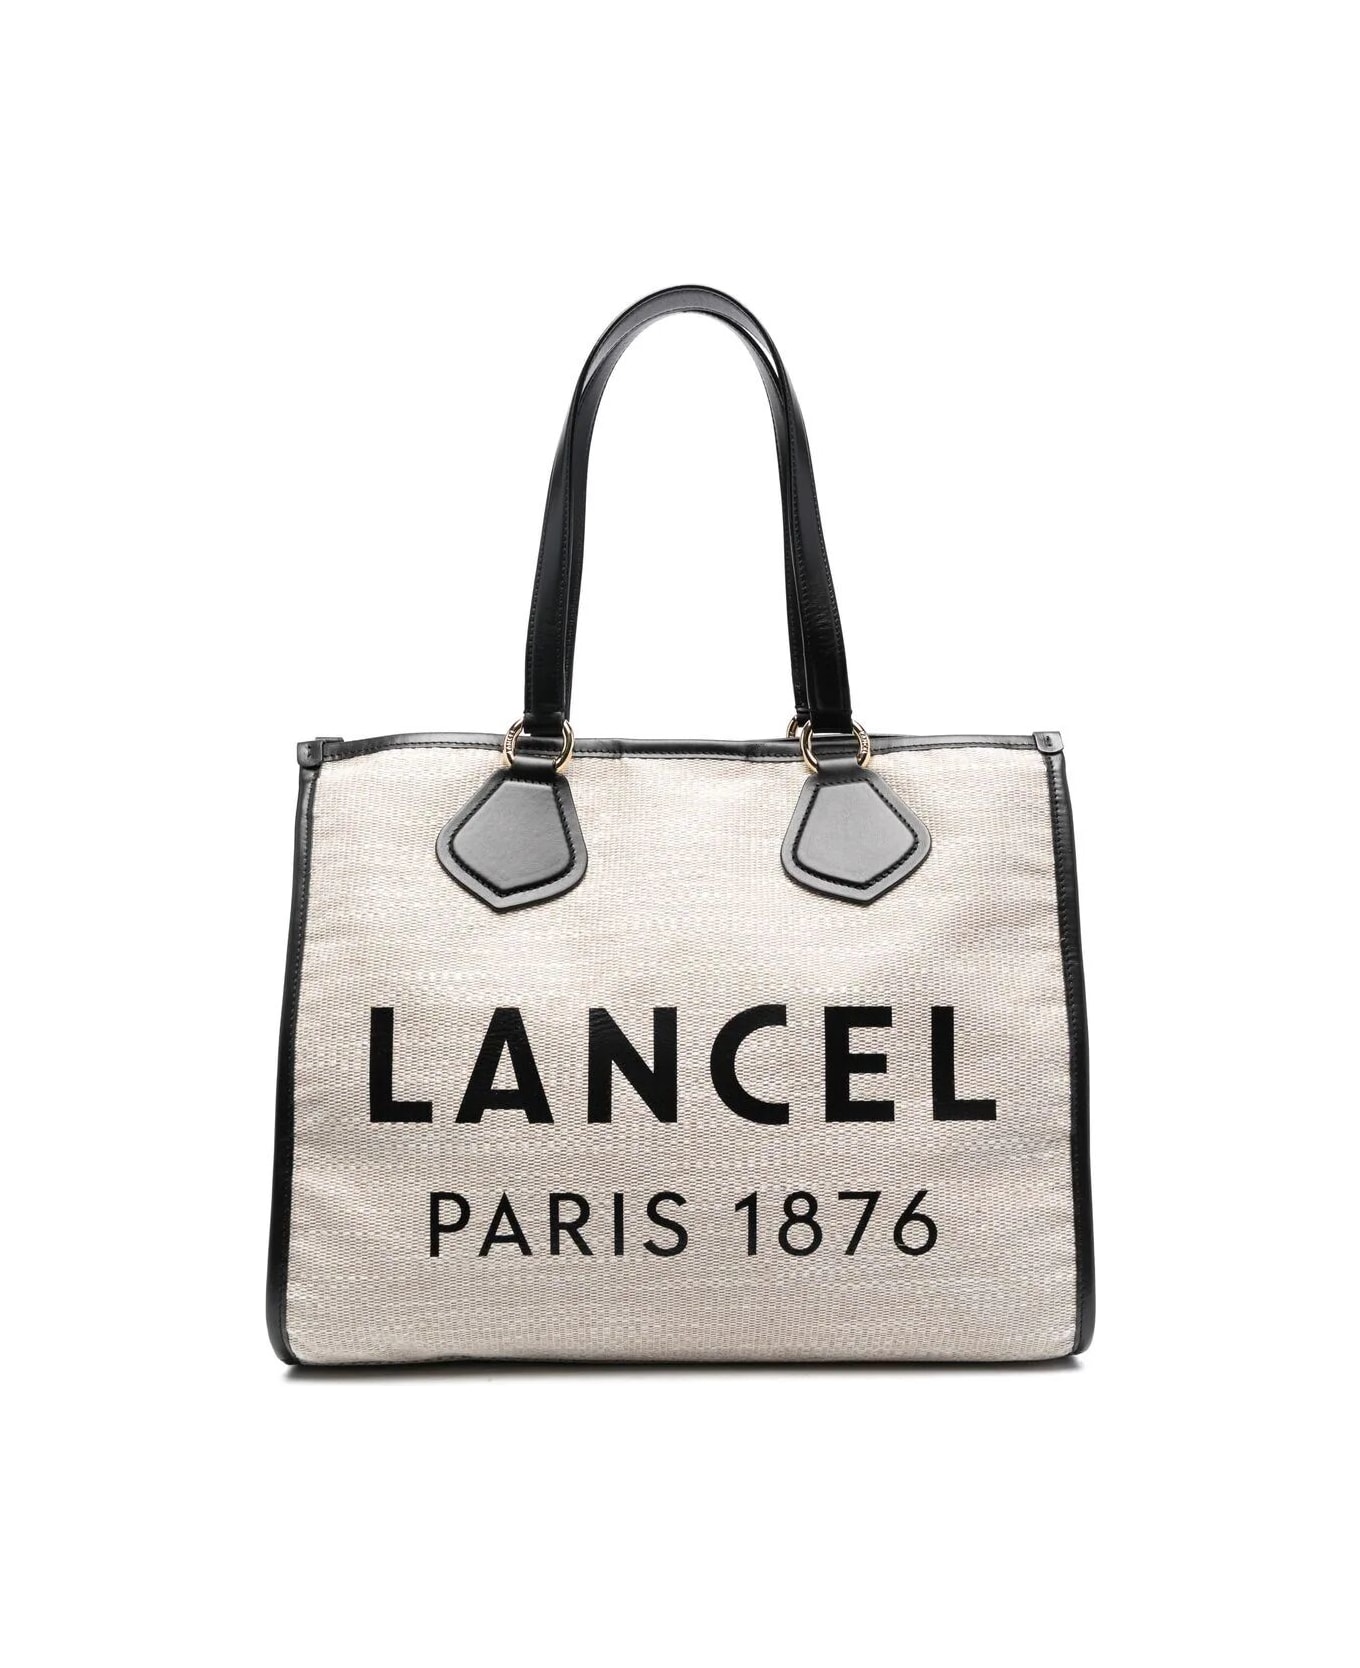 Lancel Summer Tote - L414201l Beach Bag - A Natural Blk